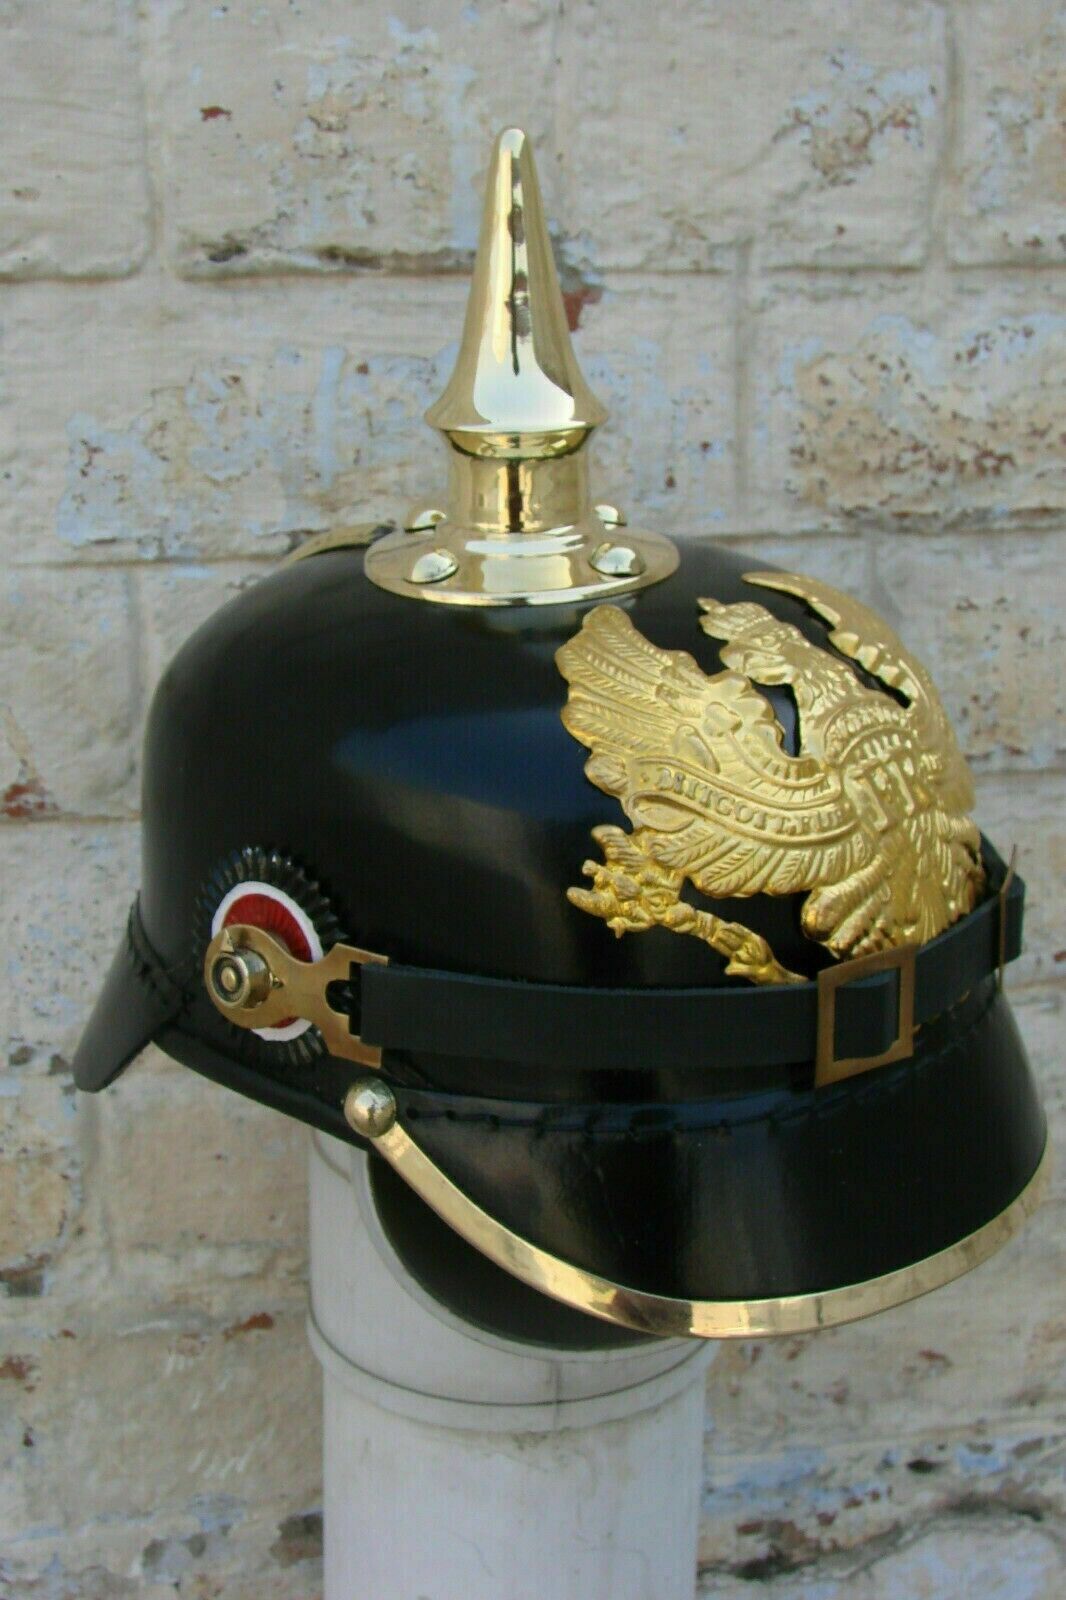 Prussian Leather Helmet FR German Pickelhaube Officer Costume Dress Hat WWI WWII